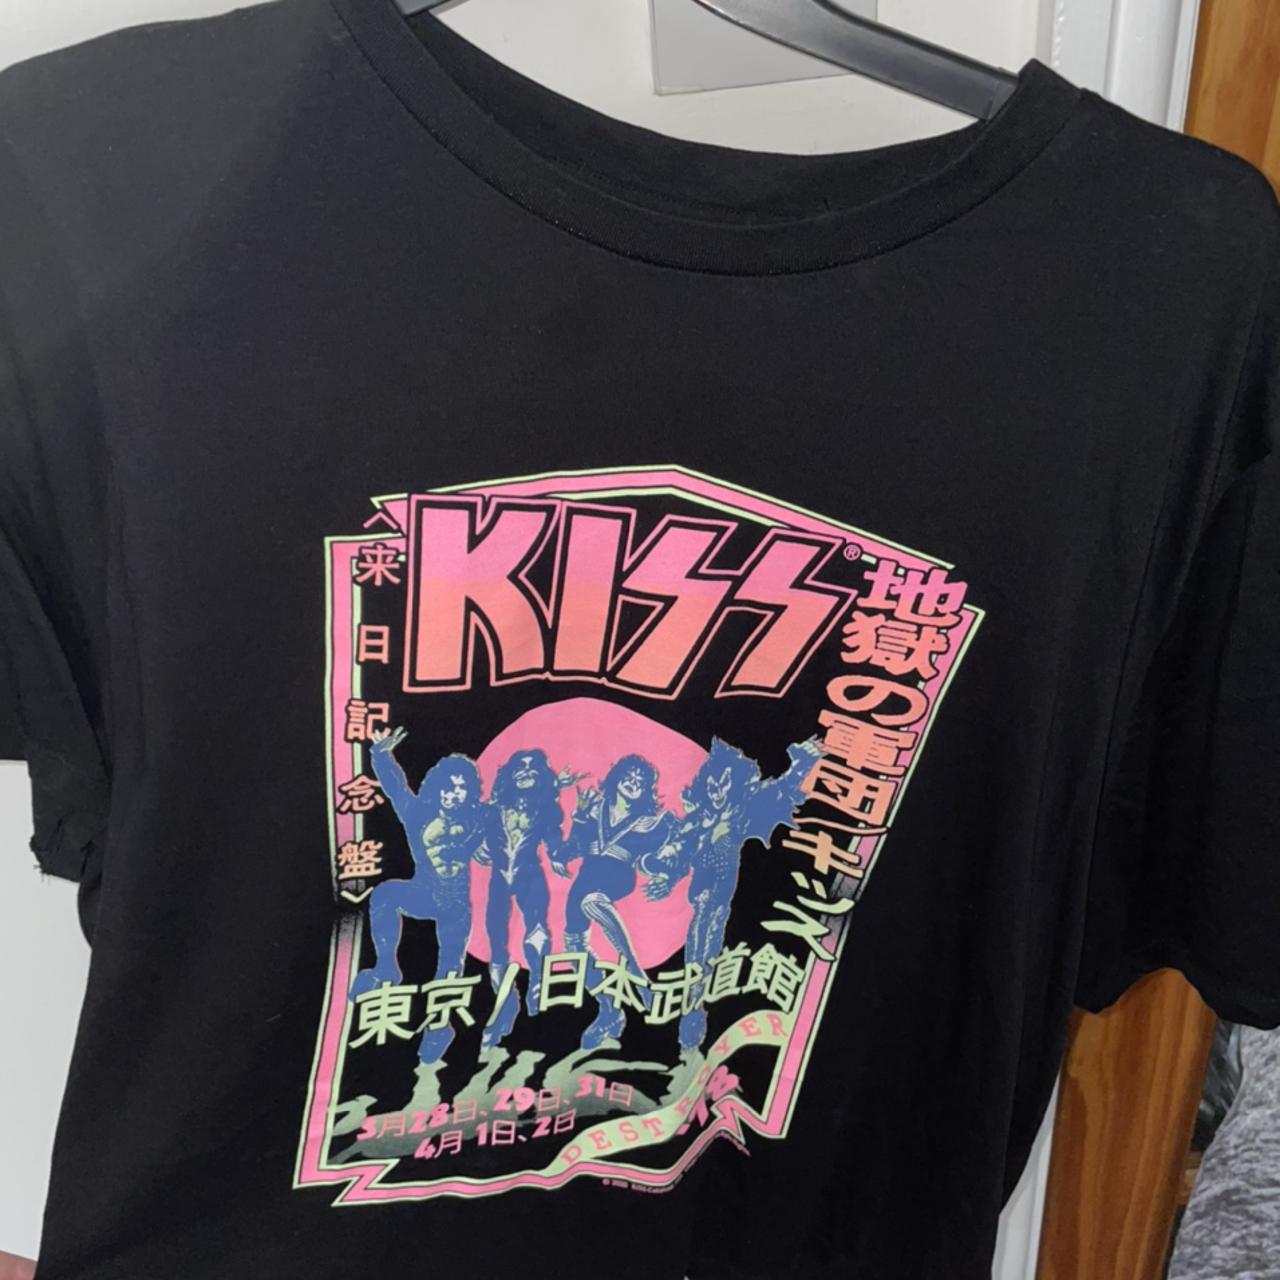 Nøjagtig Artifact nitrogen KISS T-shirt colourful! Rock band merch from H&M!... - Depop